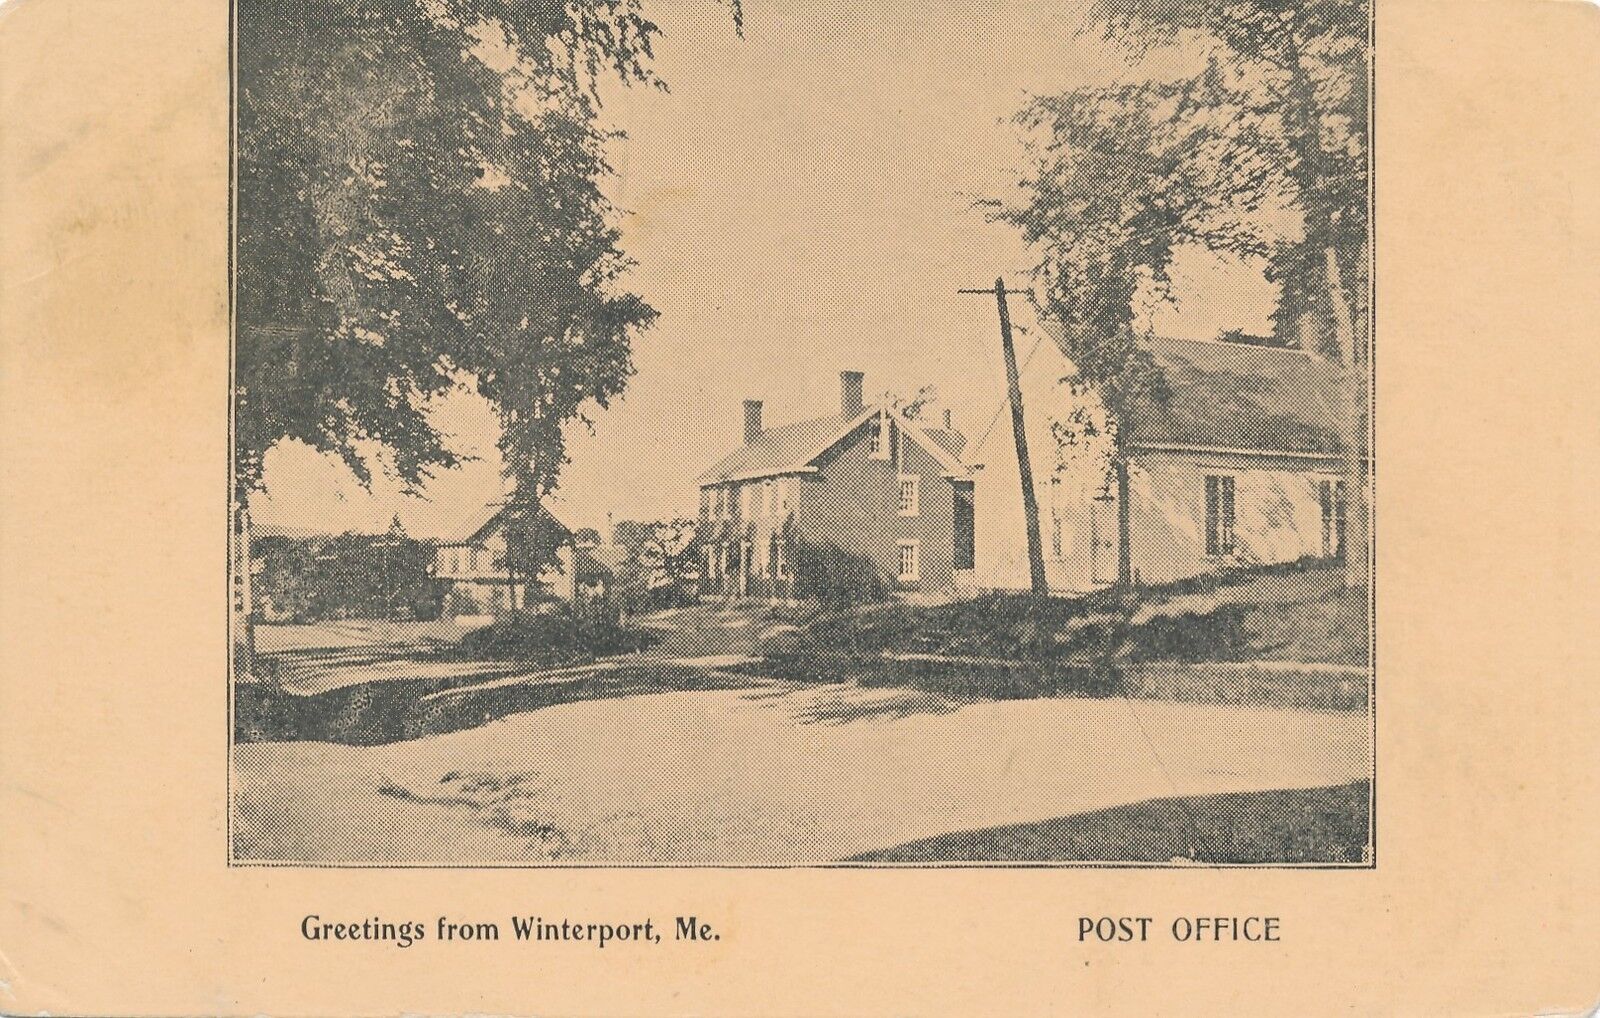 WINTERPORT ME – Post Office – udb (pre 1908)